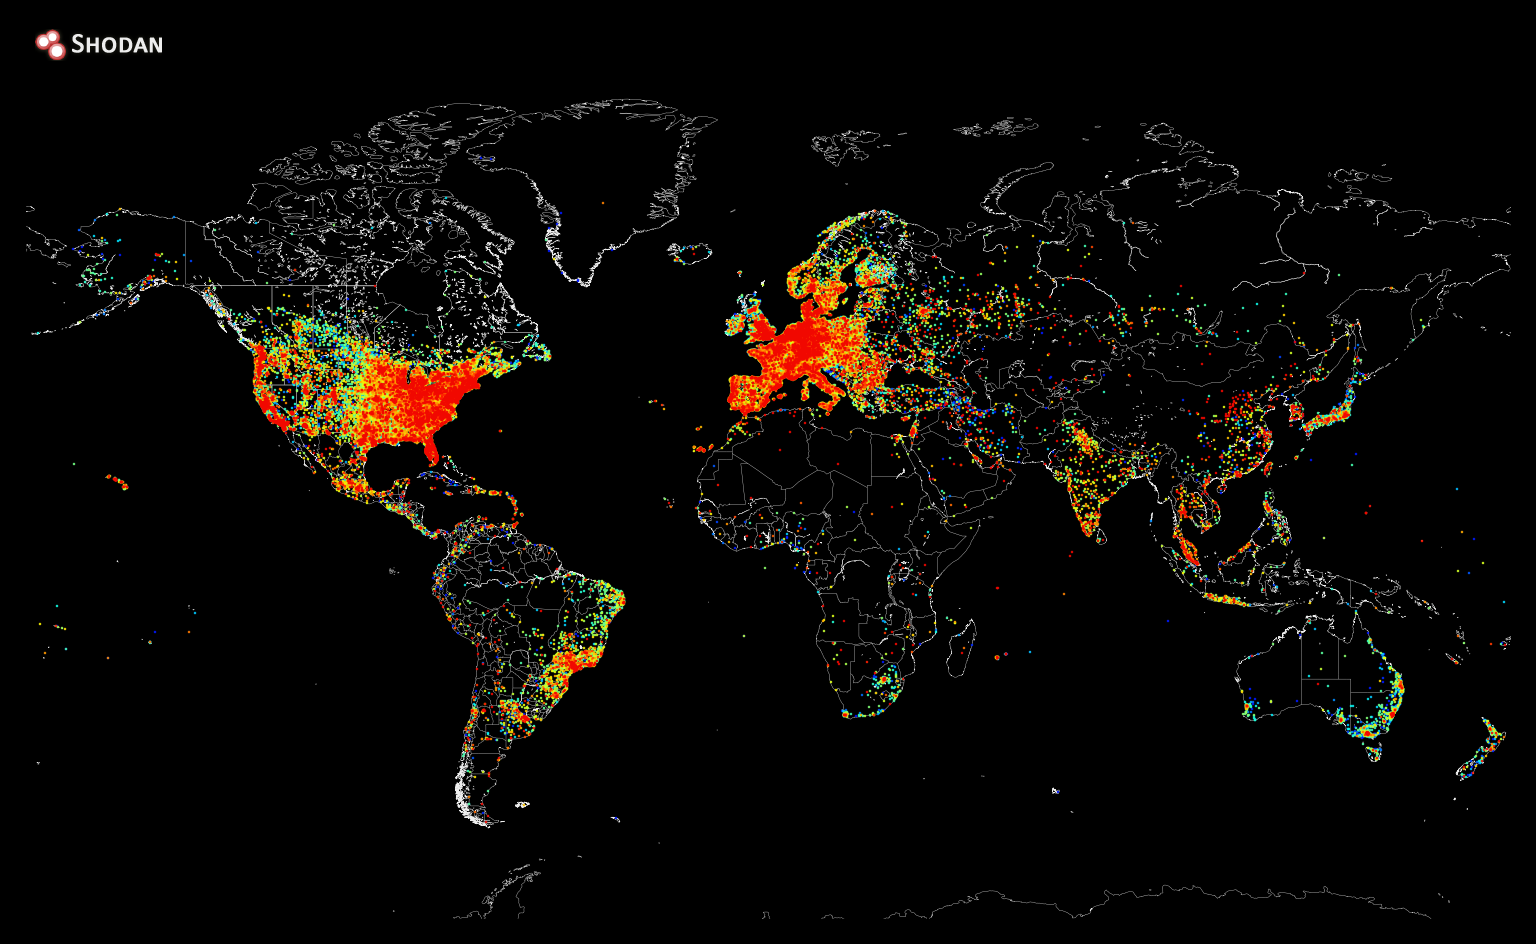 Mapa da conexão à internet no mundo (Foto: reprodução/imgur)